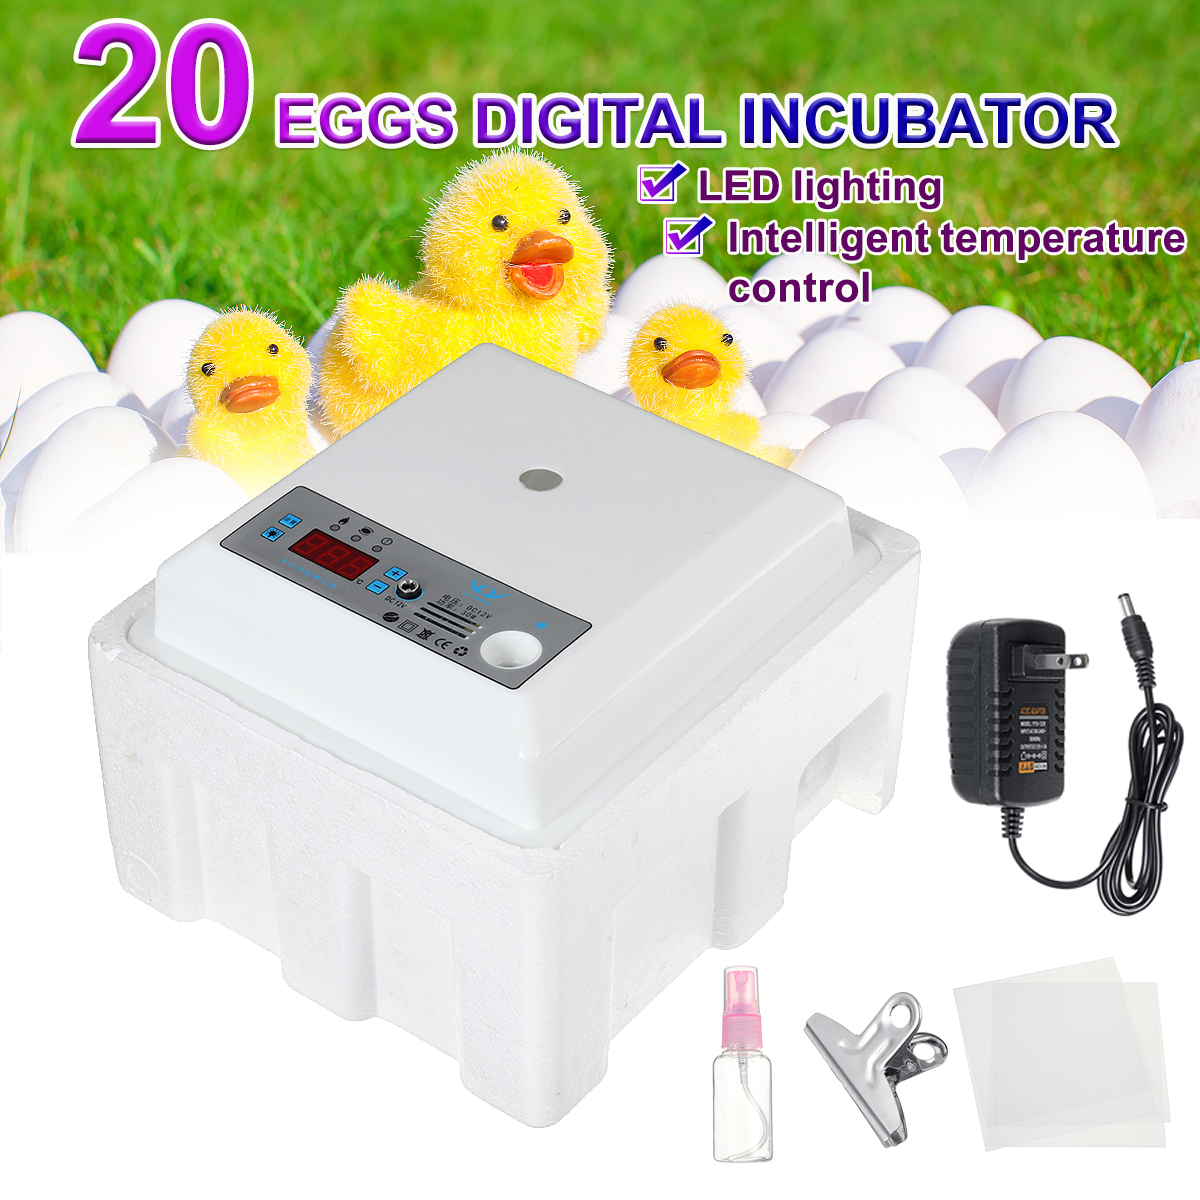 20ไข่กลับด้านอัตโนมัติIncubatorดิจิตอลLEDอุณหภูมิมินิIncubatoresฟักไข่ต่างหูรูปสัตว์นกกระทาไข่ไก่